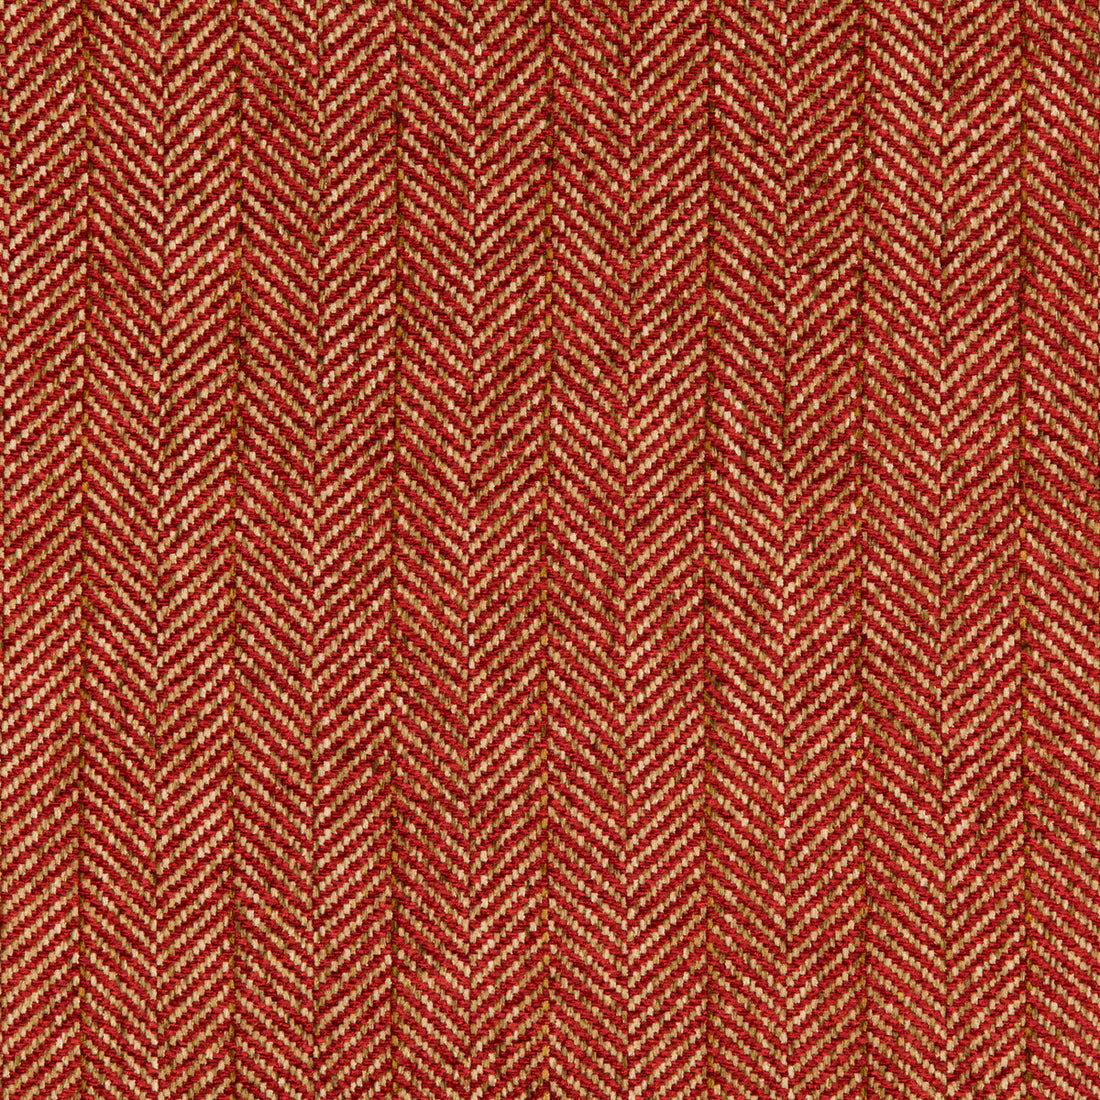 Kravet Basics fabric in 35776-19 color - pattern 35776.19.0 - by Kravet Basics